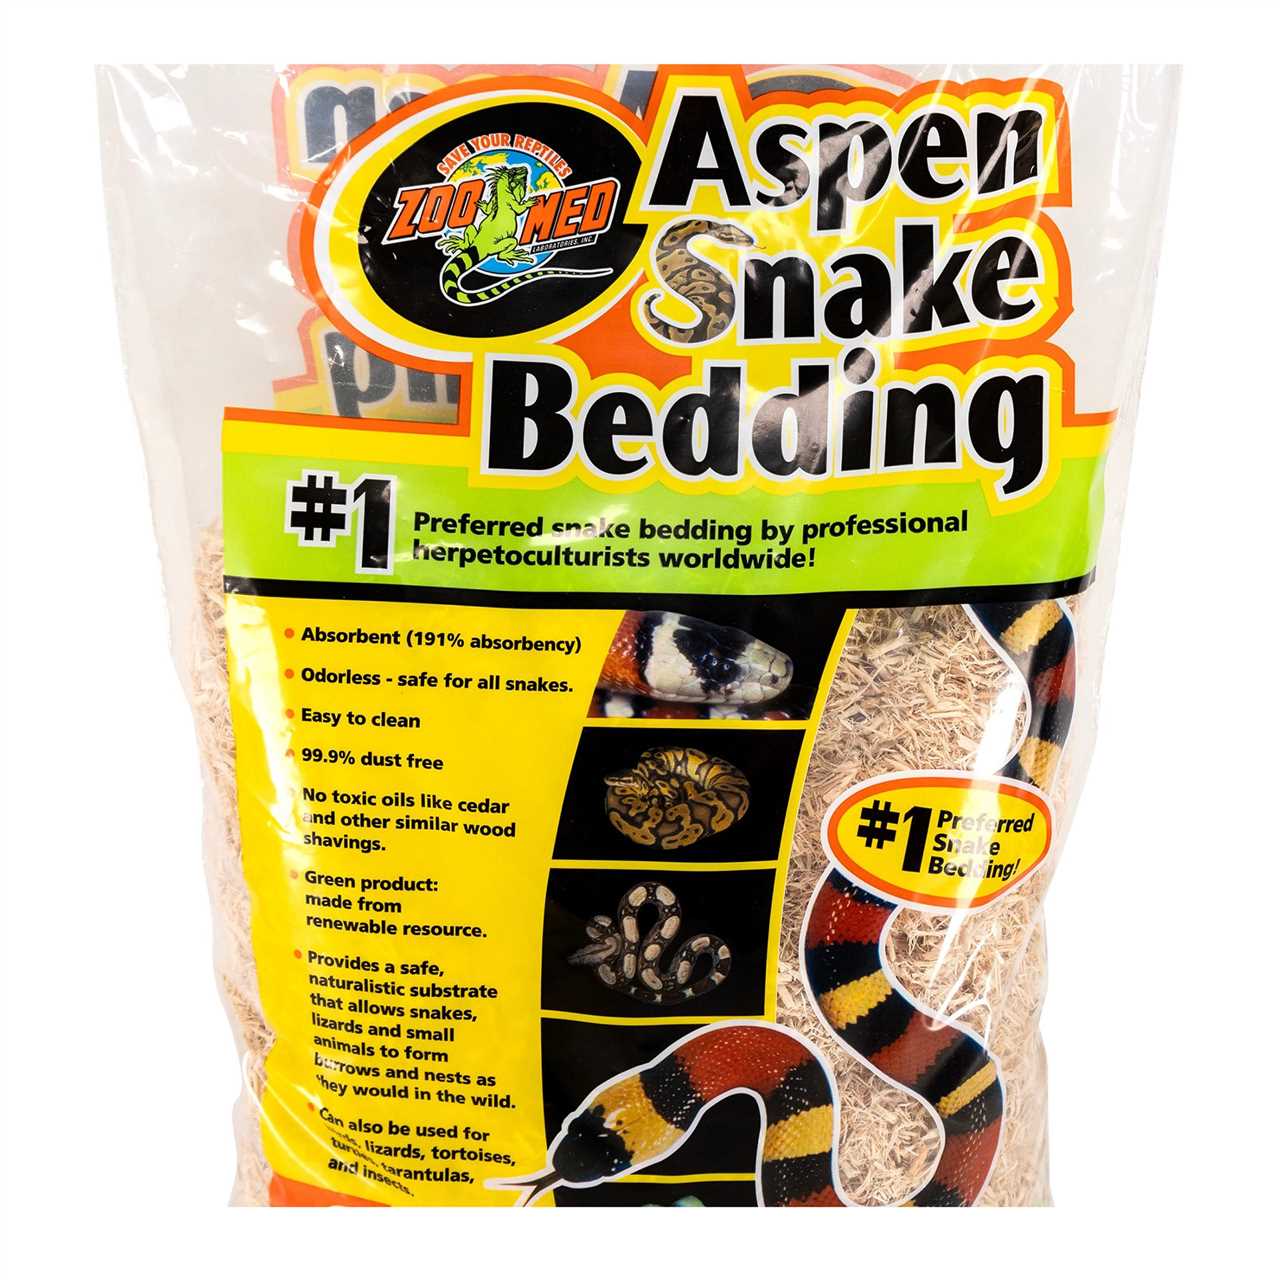 Snake bedding